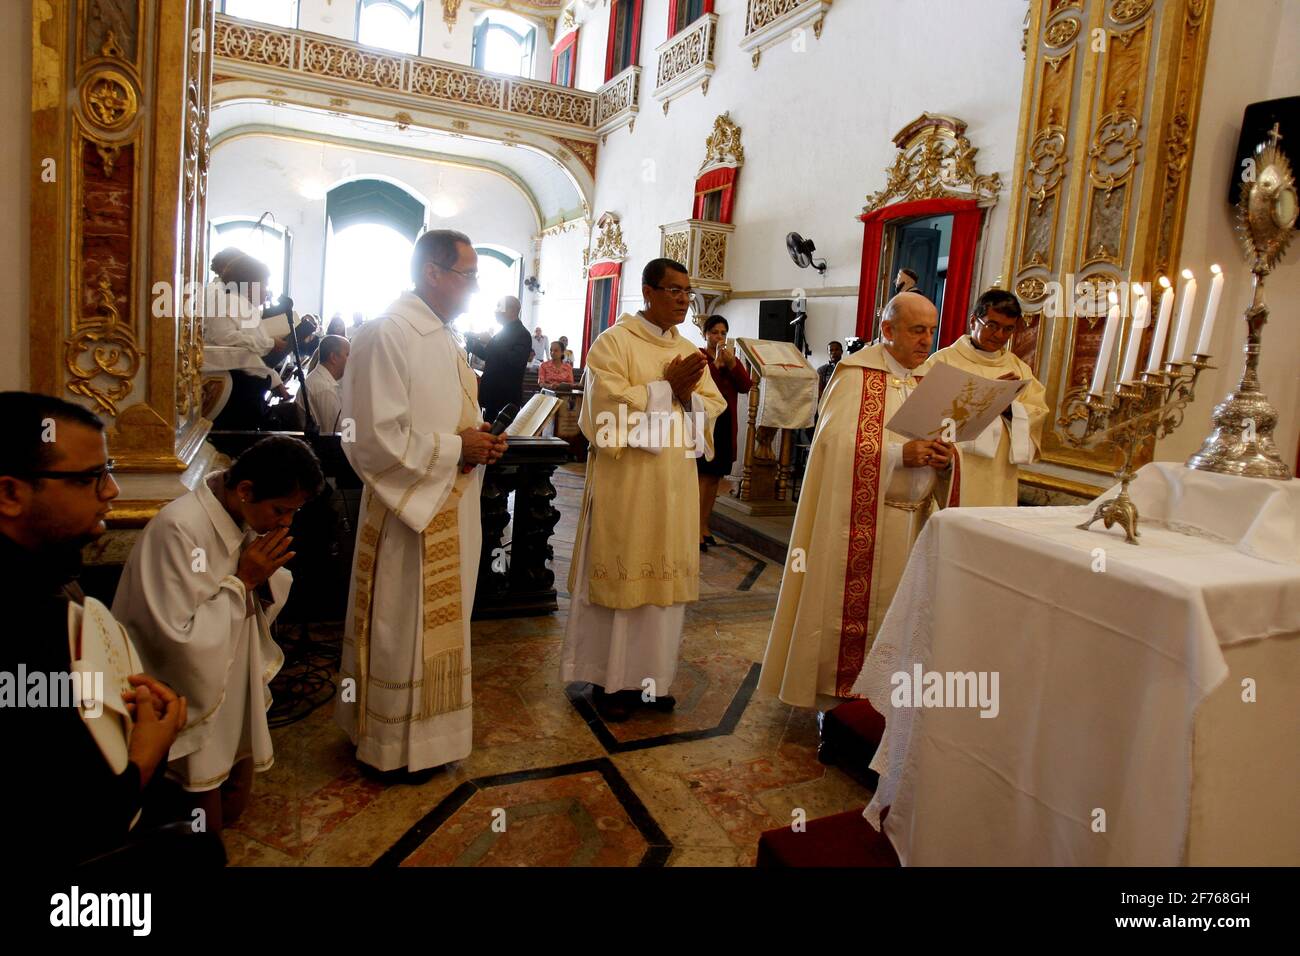 salvador, bahia / brazil - july 1, 2015: Mass symbolizing the 'Te Deau' at the Sao Pedro dos Clerigos Church in Pelourinho, Salvador. The ceremony mar Stock Photo